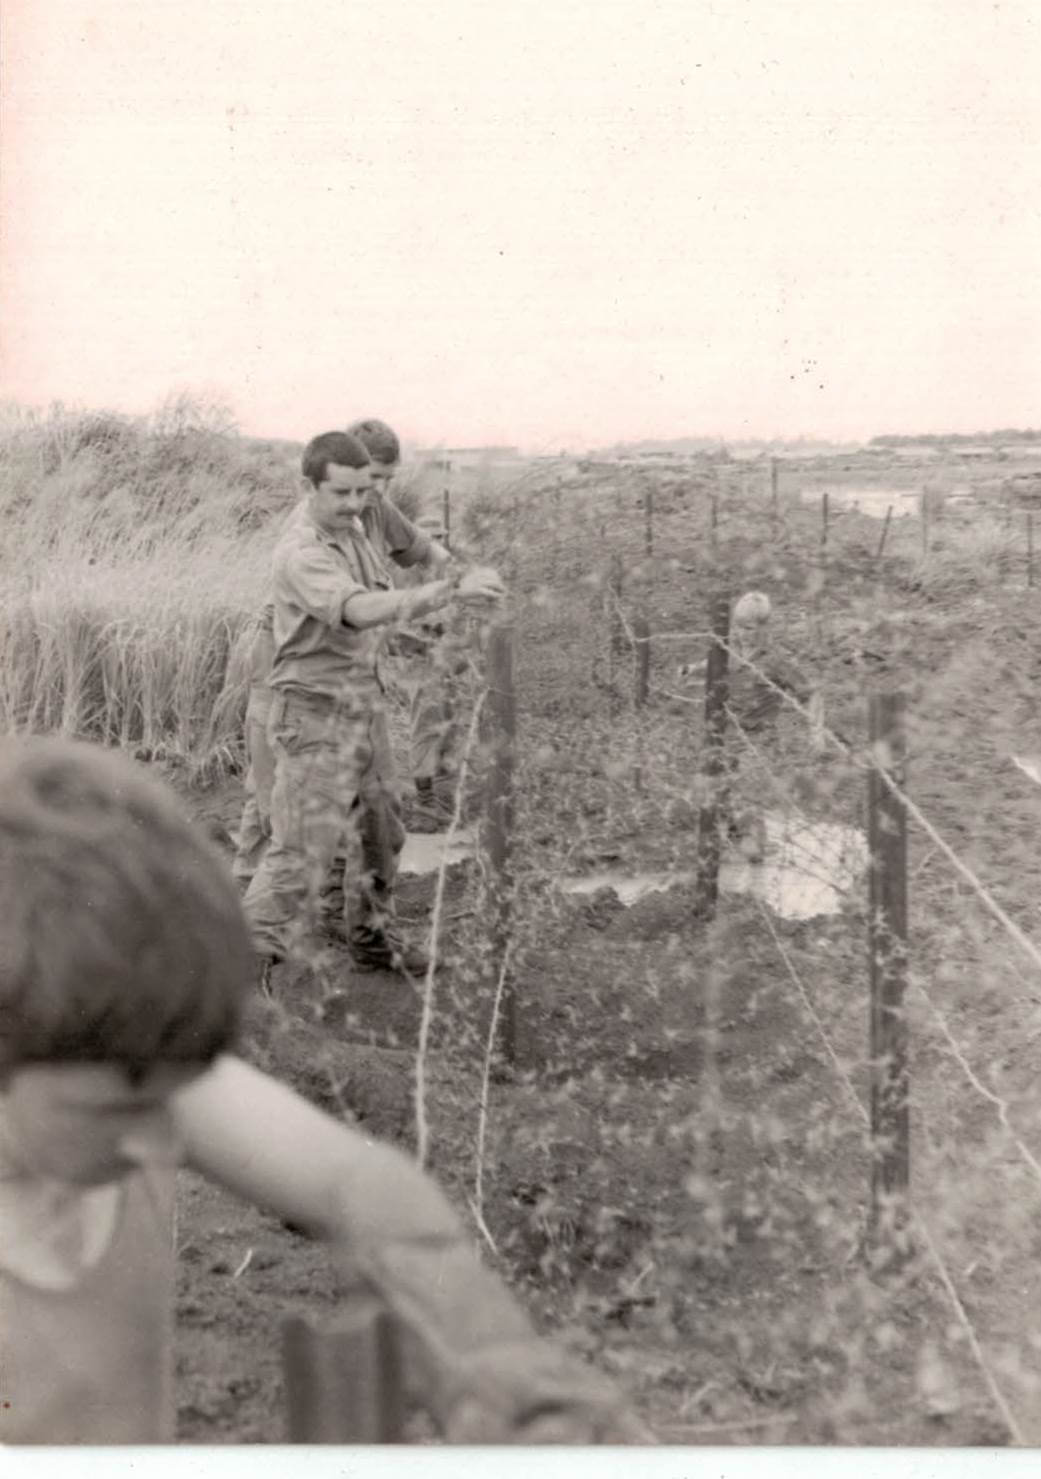 Sappers of 1 FD SQN GP repairing perimeter wire at Nui Dat 1971.